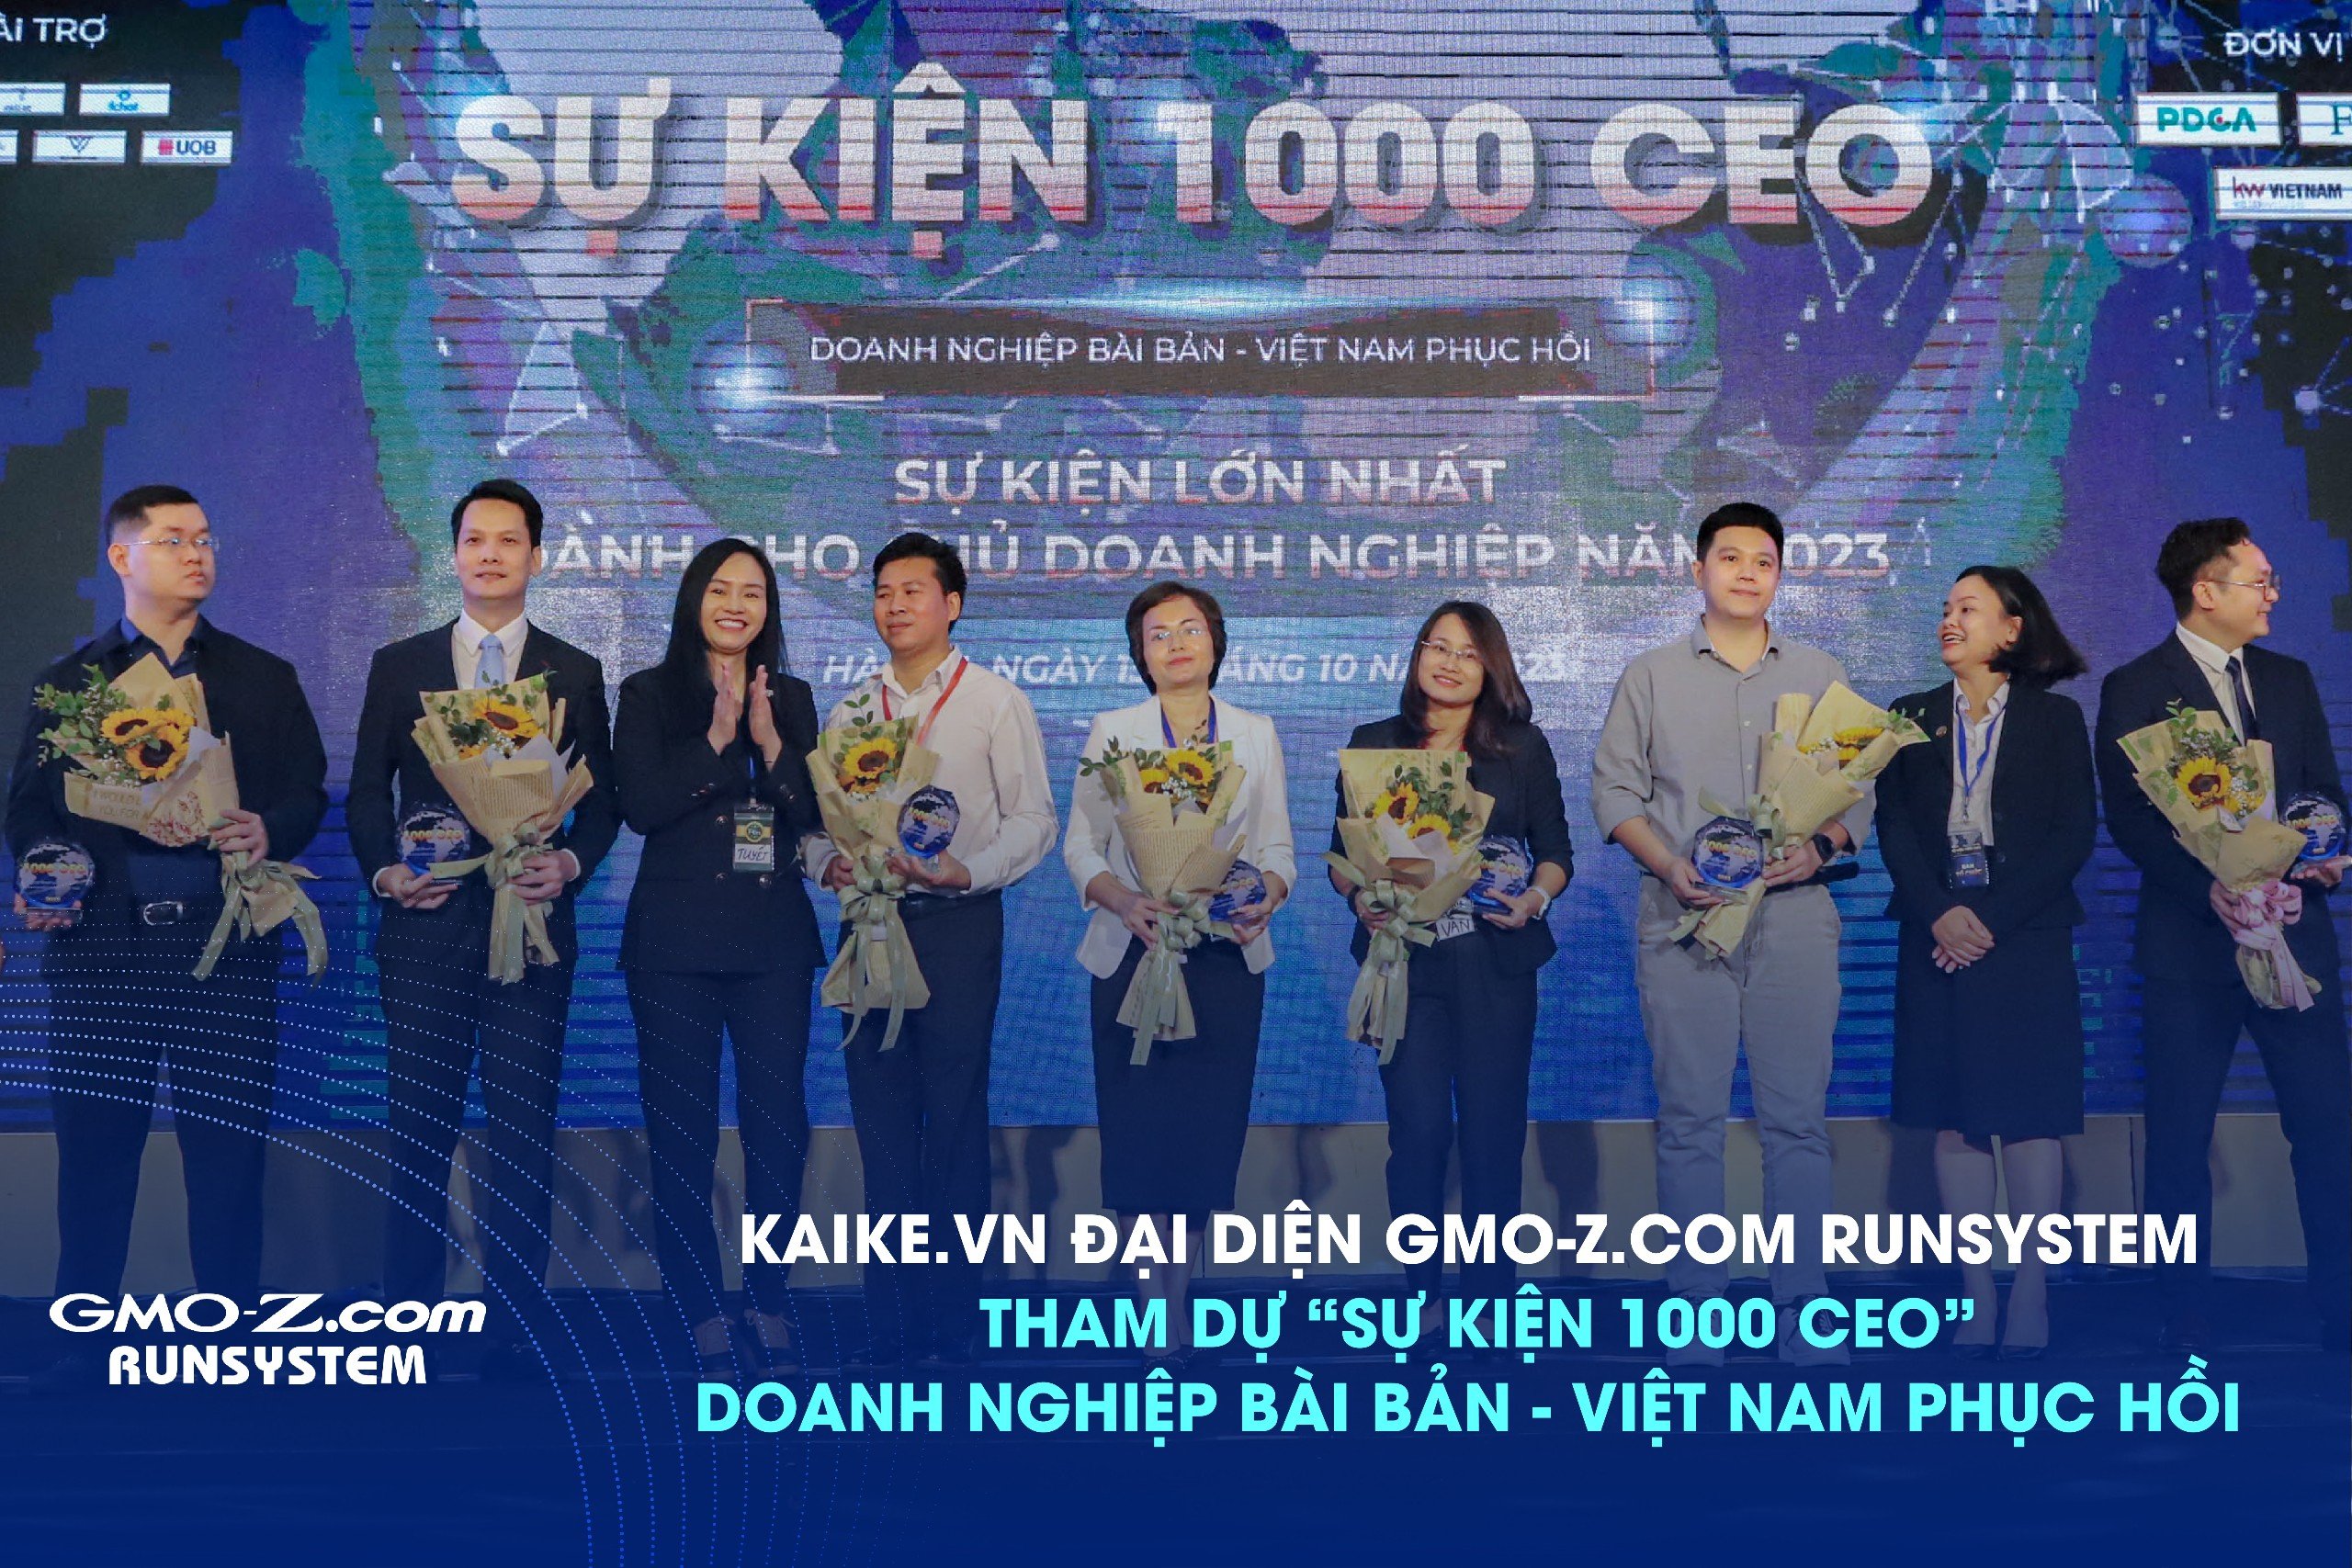 Phần mềm kế toán Kaike tham gia "Sự kiện 1000 CEO - Doanh nghiệp bài bản, Việt nam phục hồi"